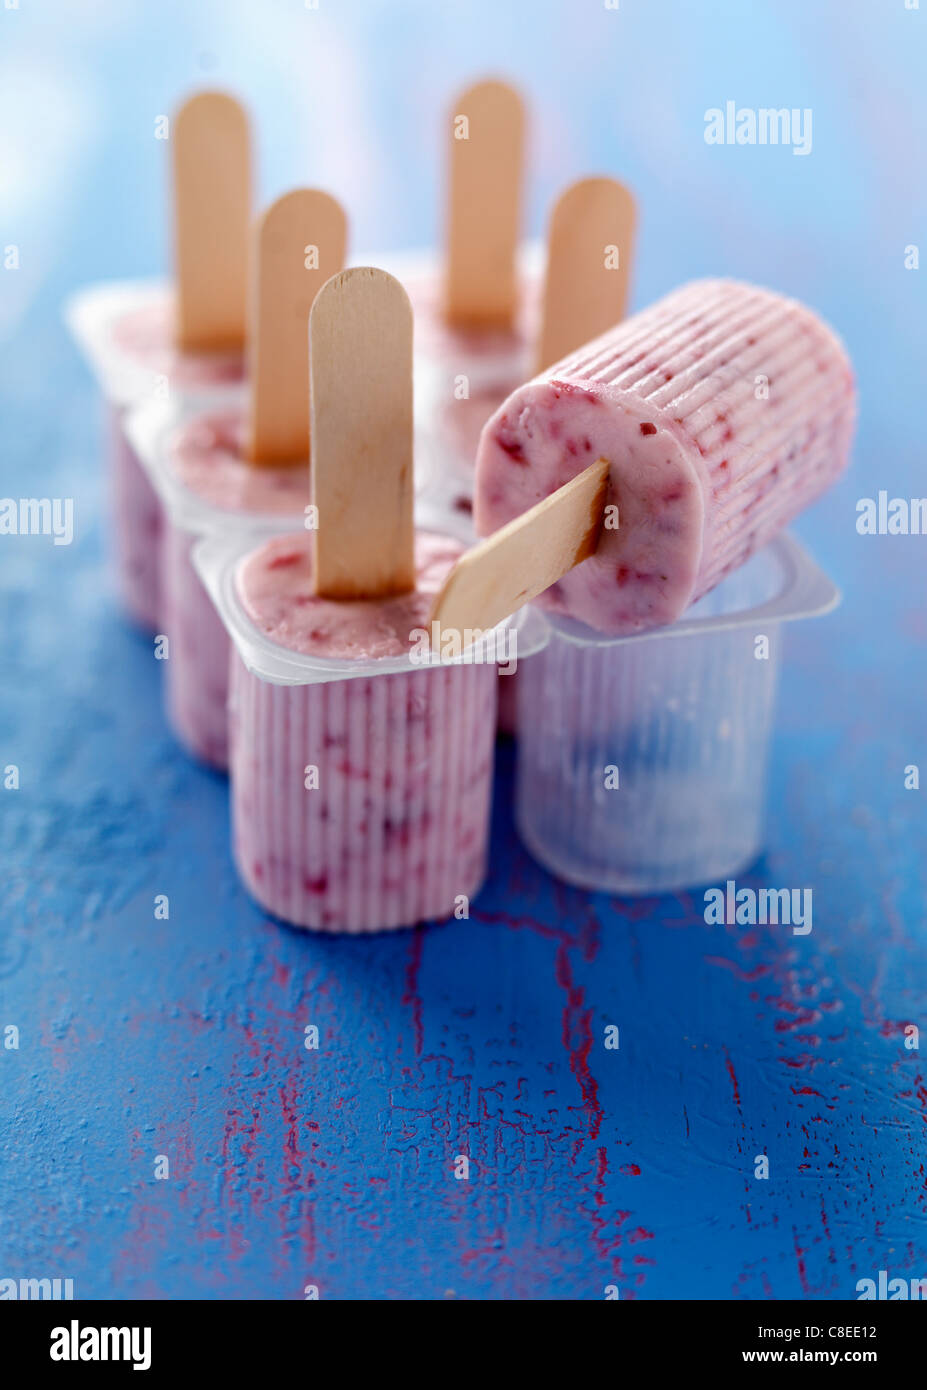 Express petits-suisses glaces lollipops Banque D'Images